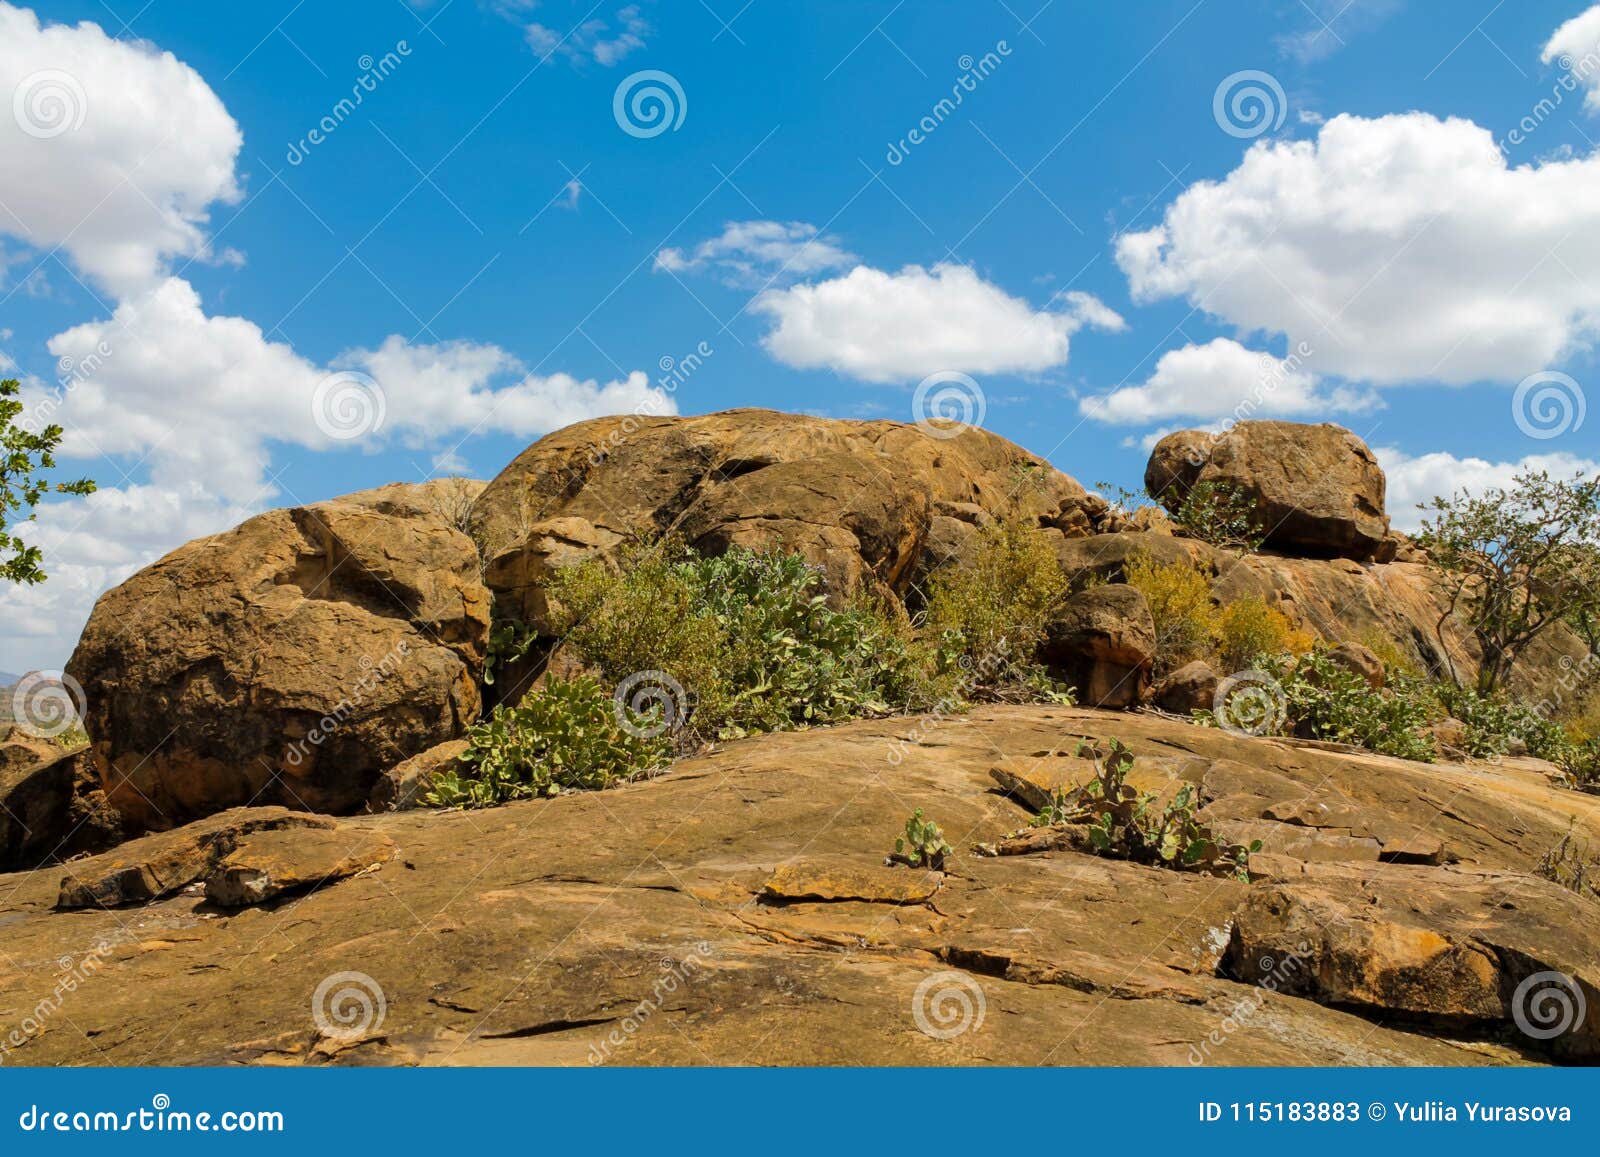 rocky mountain hill in african savanna bush